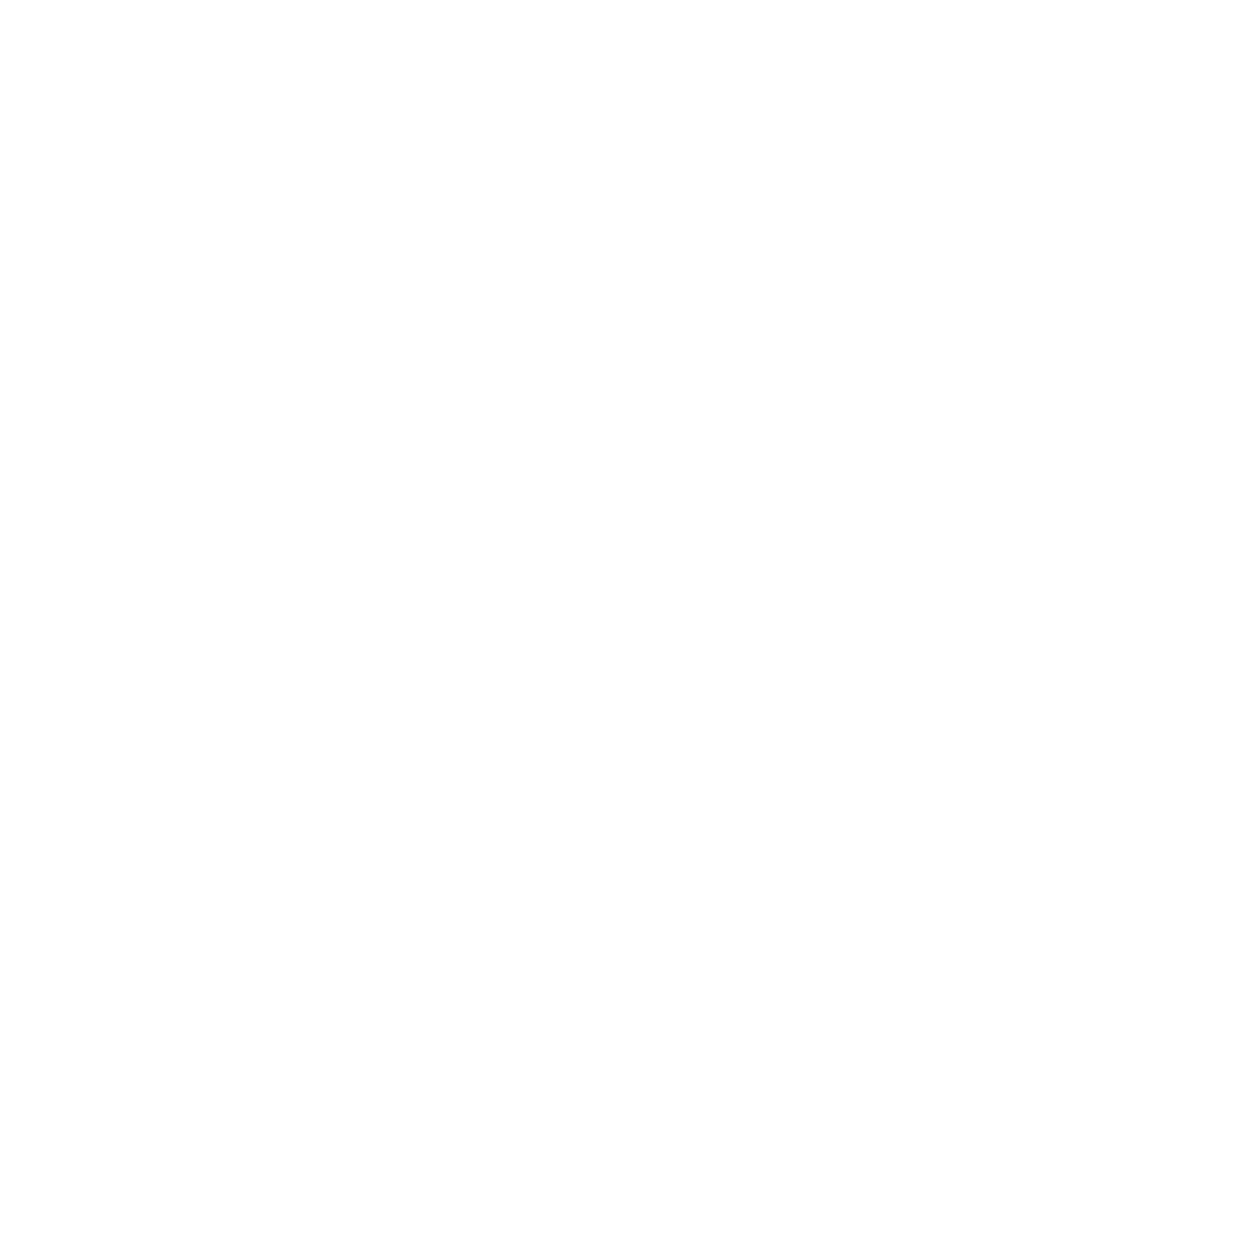 Facebook Link Twitter Link Linkedin Link - Linkedin Logo White Png Transparent Background (364x364), Png Download